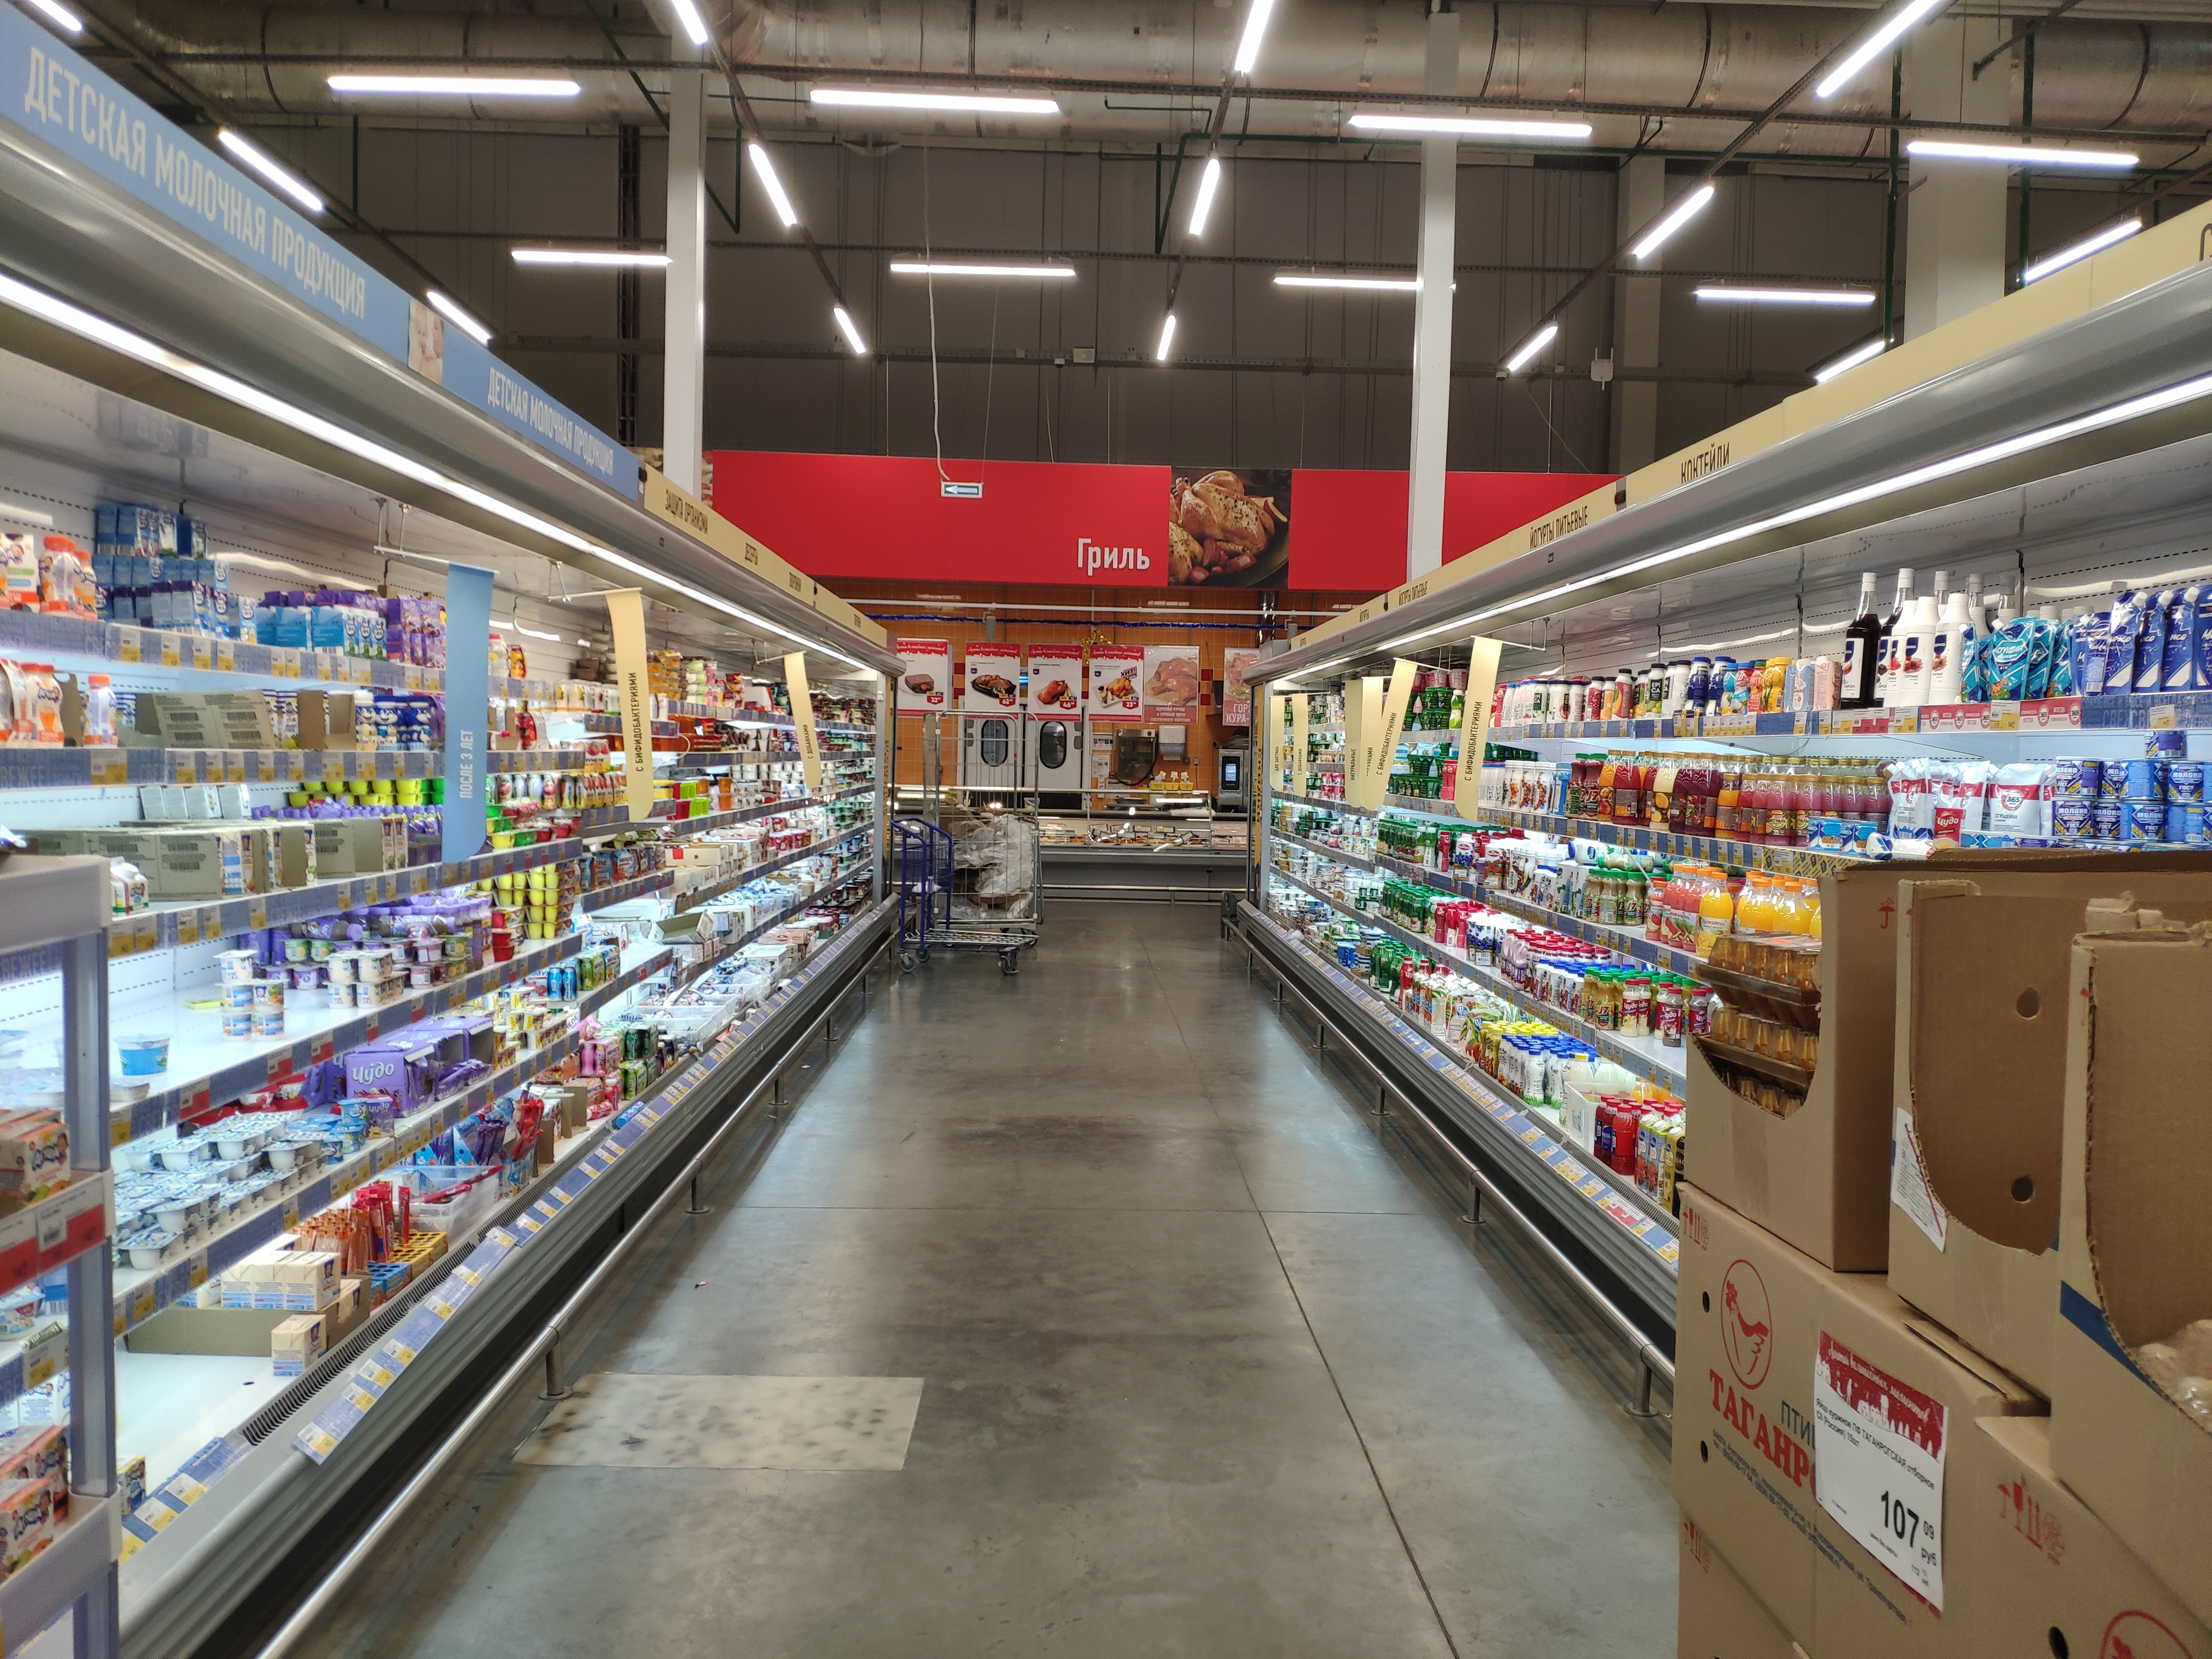 Стоимость больше, продуктов меньше. Жители Югры обсуждают продолжающийся рост цен